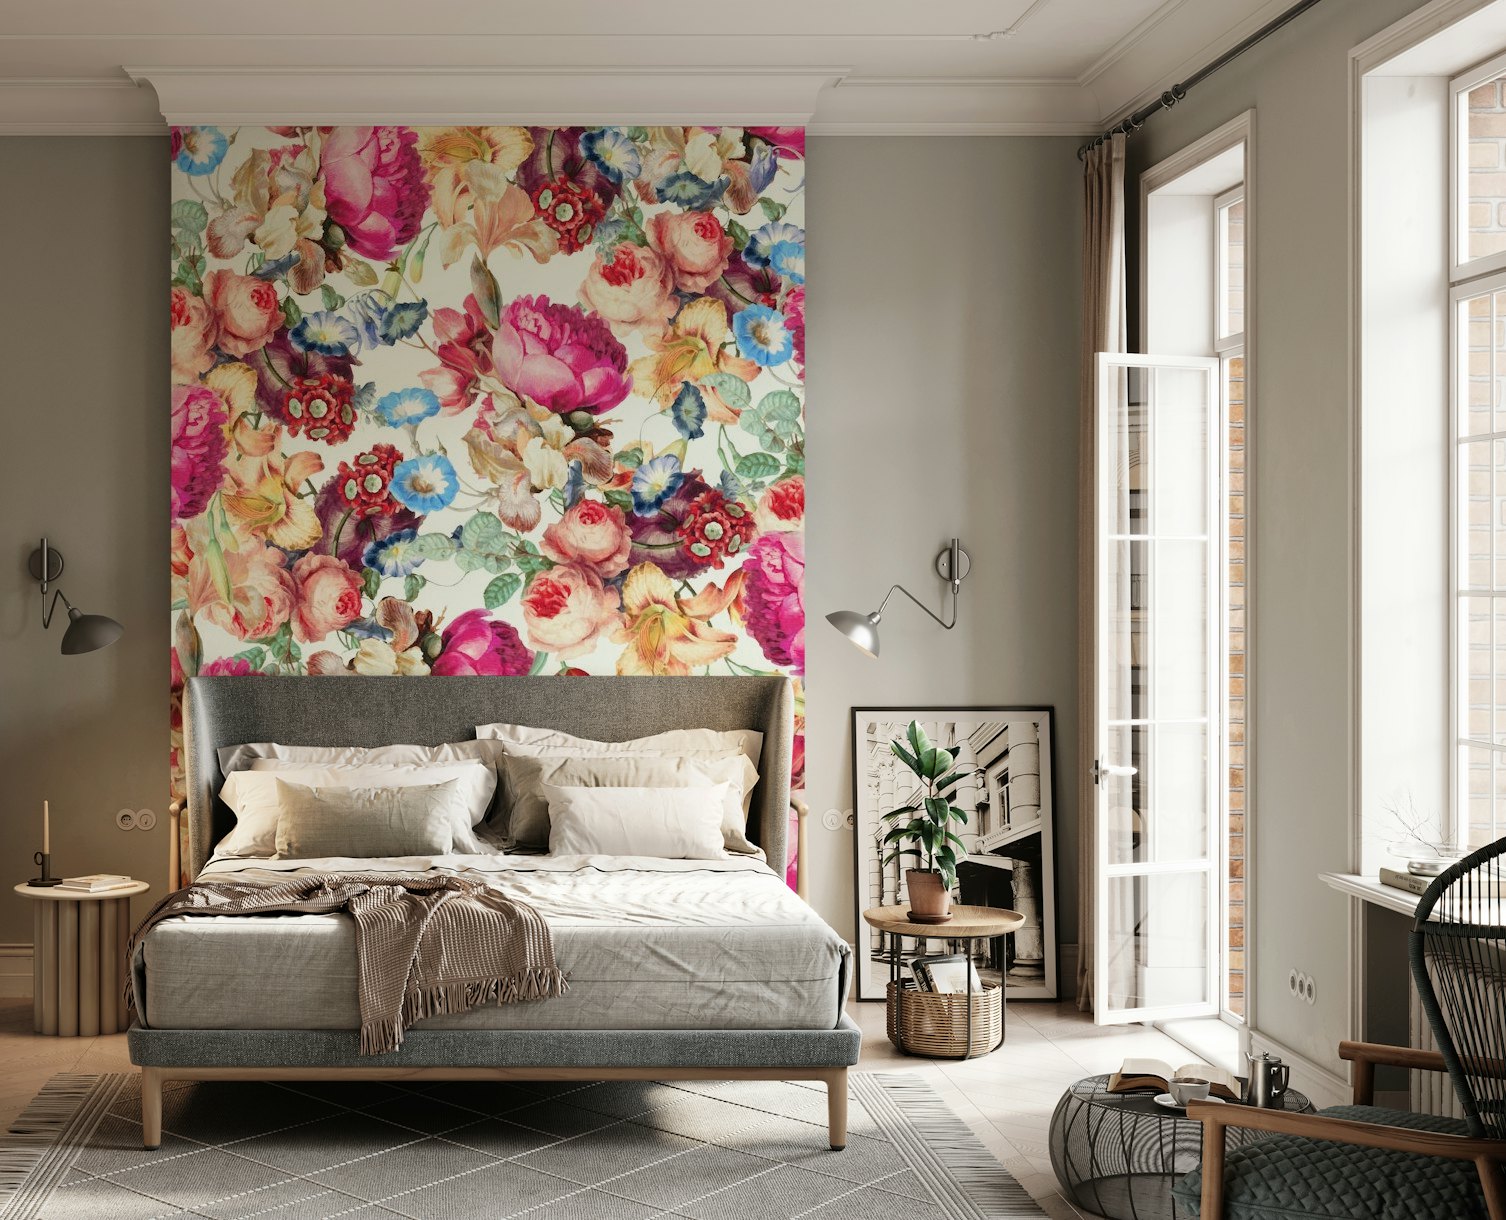 Floral Crush wallpaper